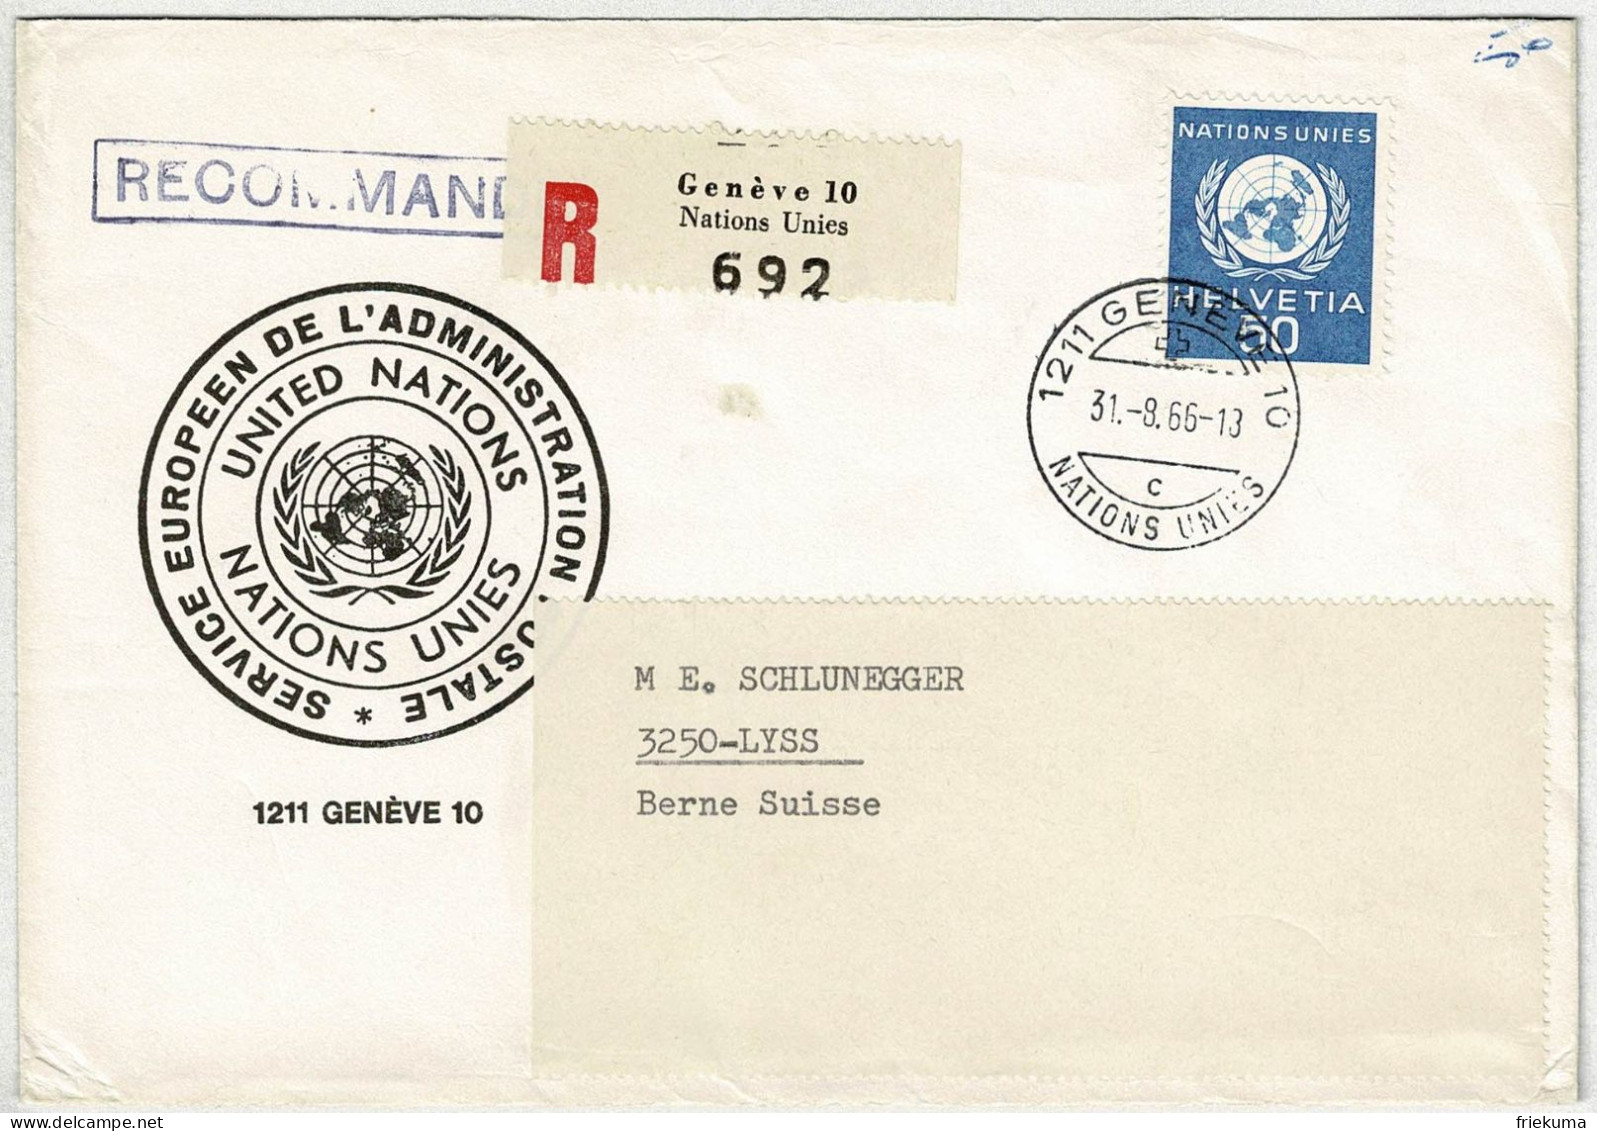 Schweiz 1966, Brief Einschreiben Genève - Lyss, Dienstmarke Nations Unies / UNO - Officials